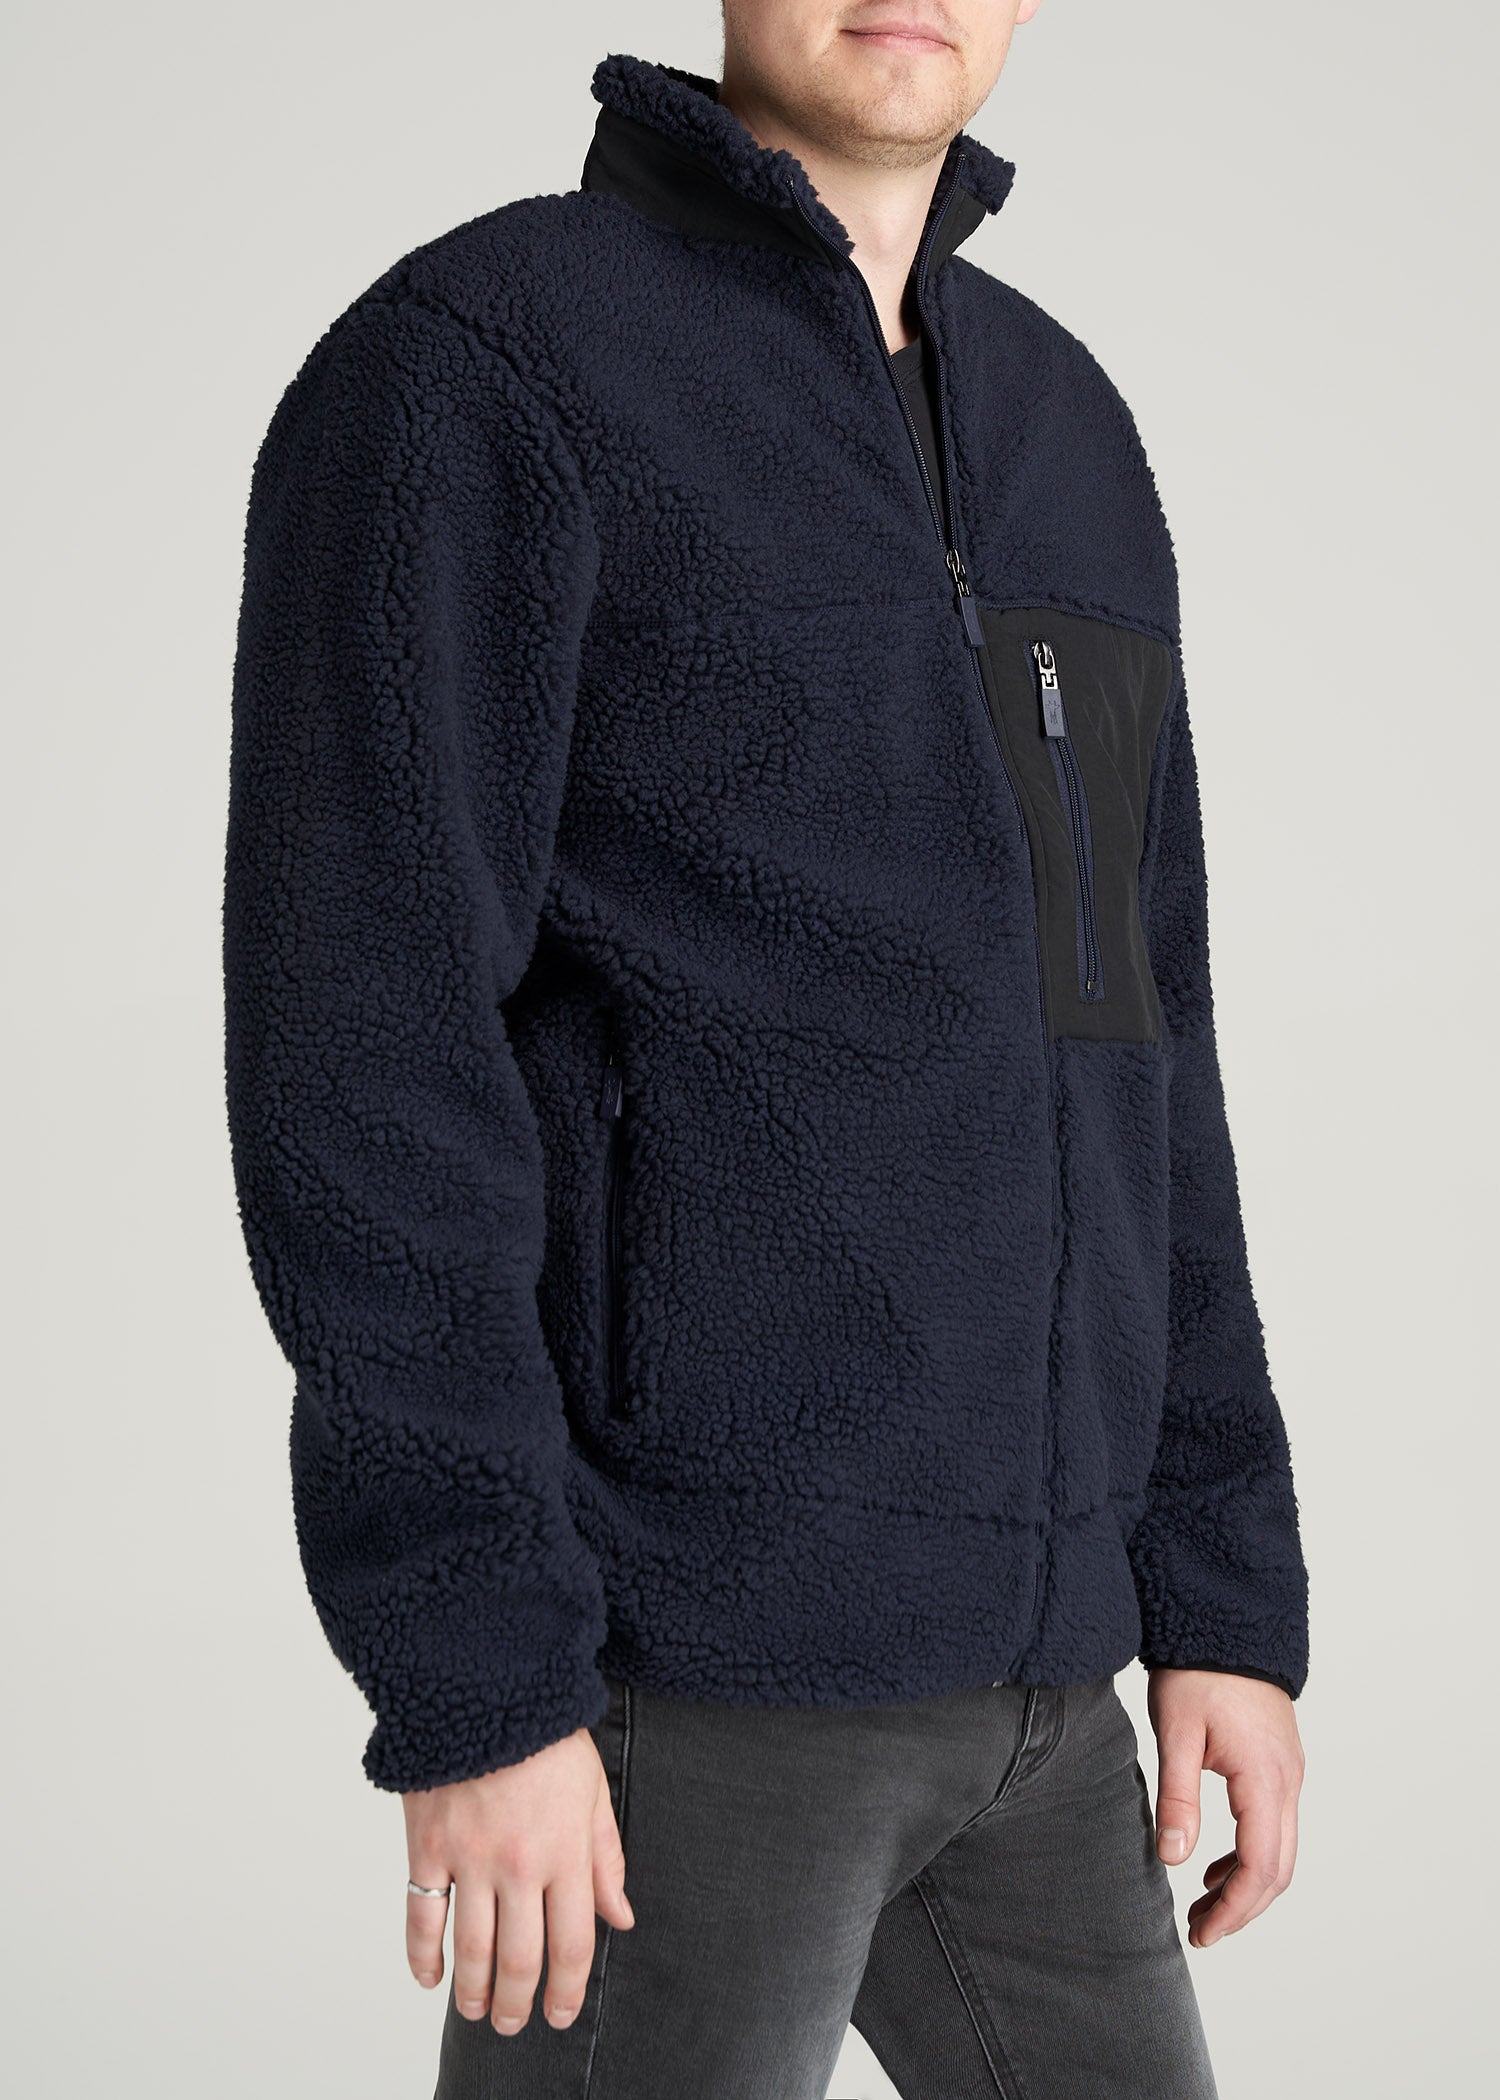 Originals Zip-Up Fleece Jacket